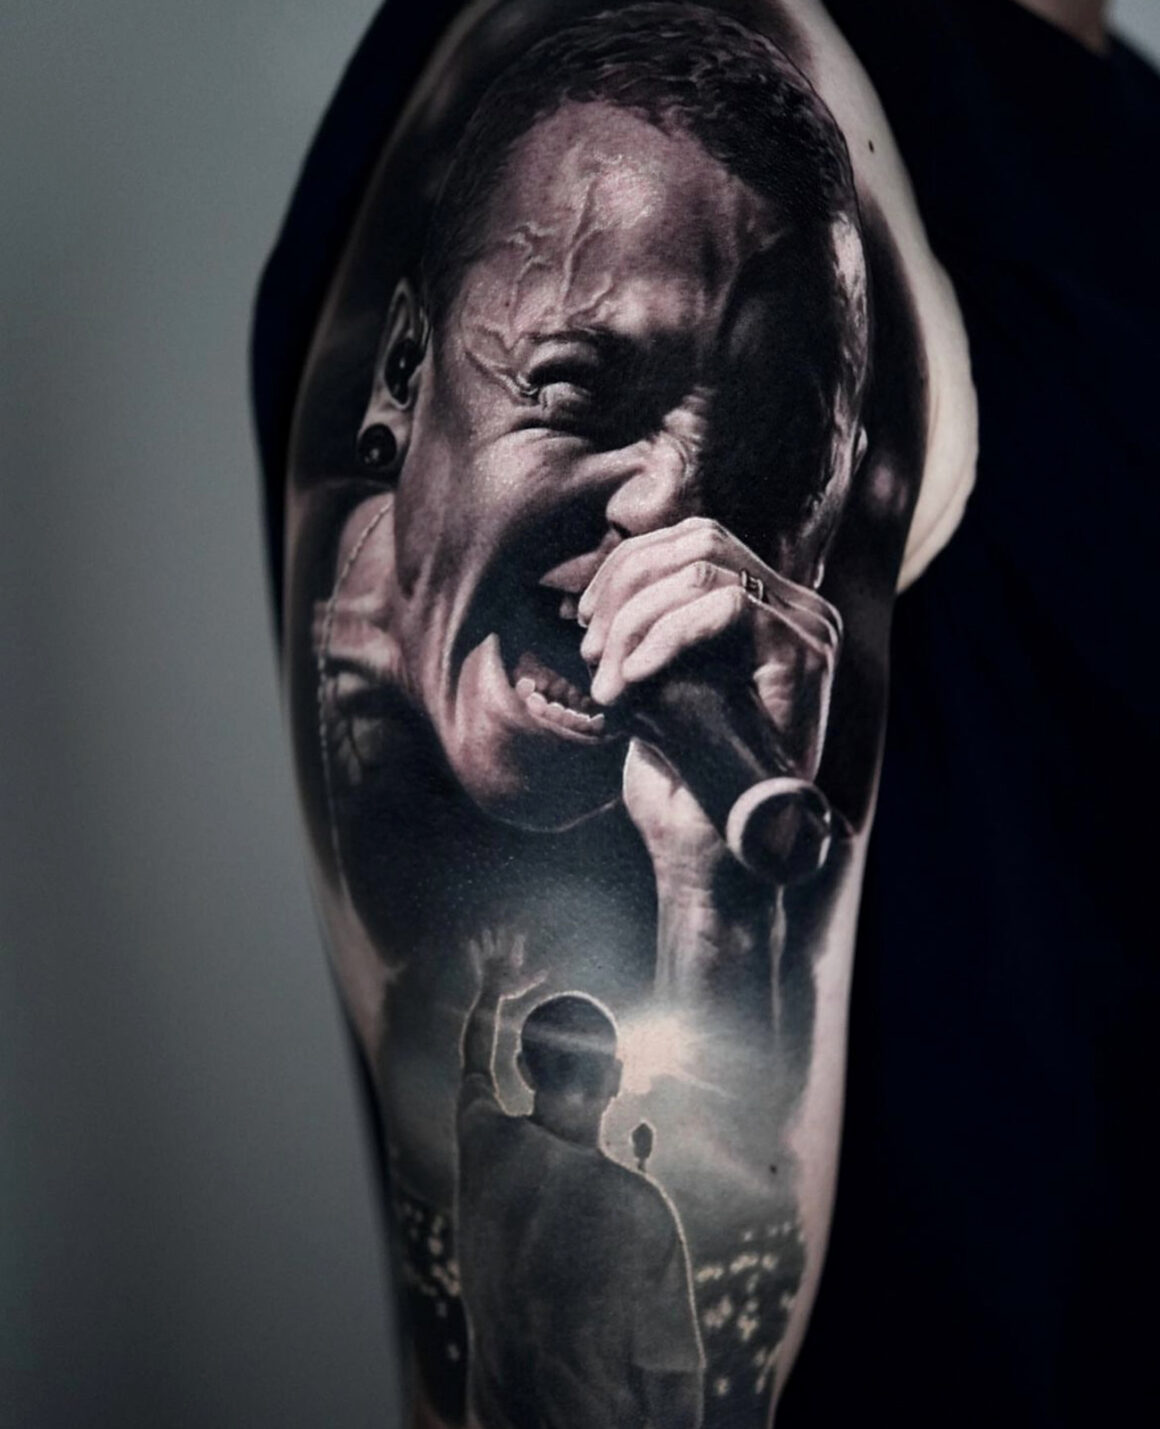 Tattoo by Mihail, German Skull Tattoo, @skulltattoosbadvilbel